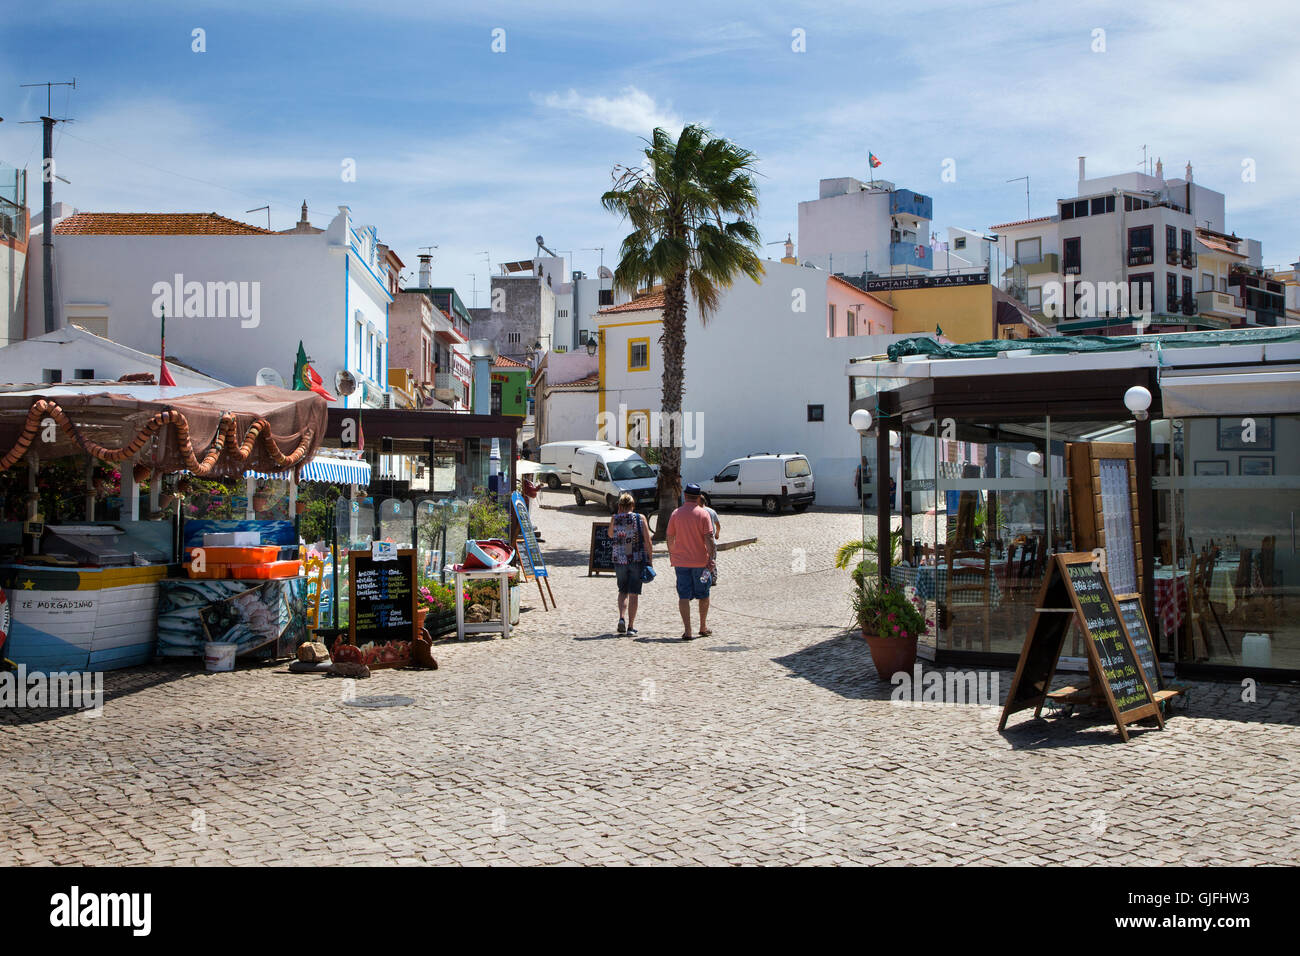 Es un tradicional pueblo pesquero de Alvor y destino turístico en el Algarve, Portugal Foto de stock